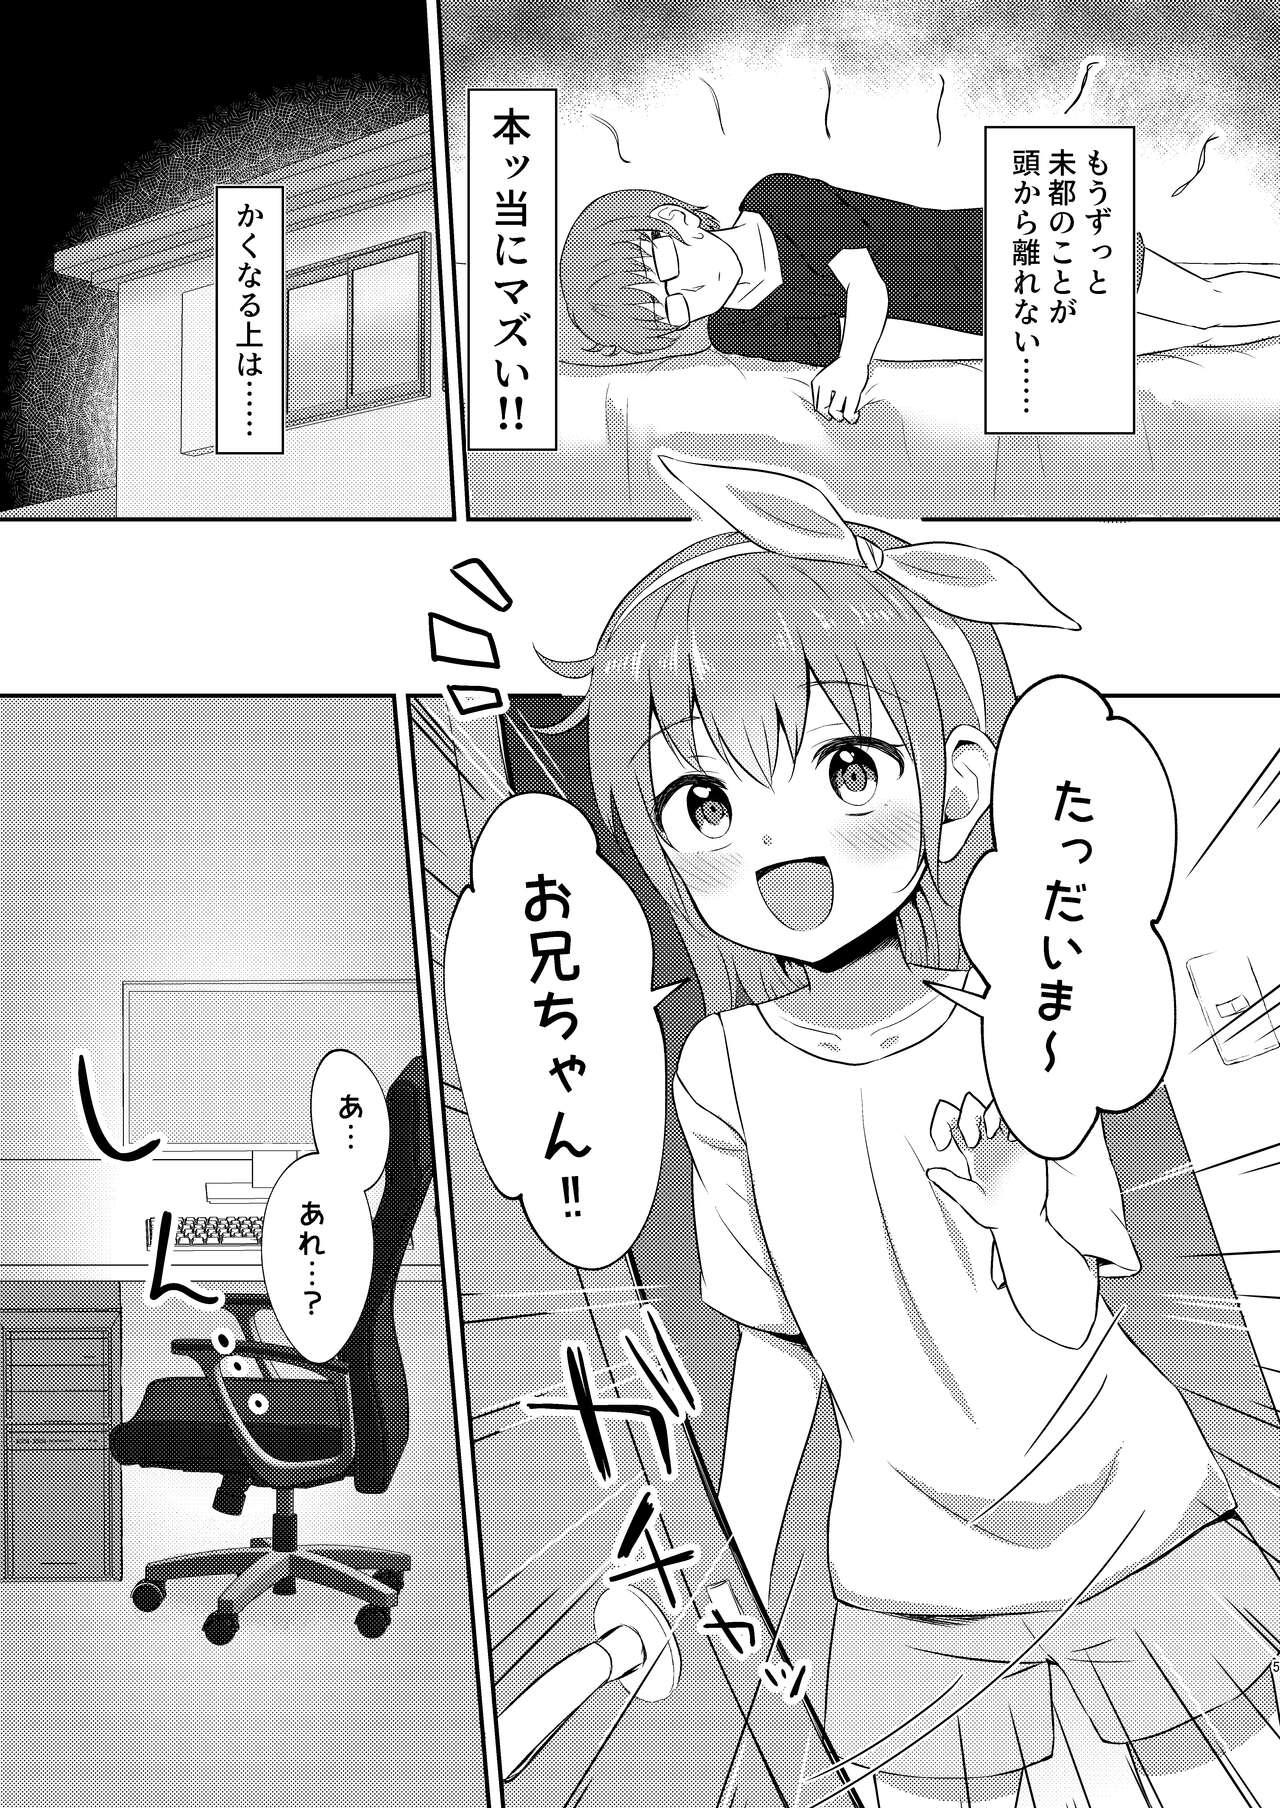 Breeding Imouto-chan wa Arawaretai!! 3 - Original Family - Page 5